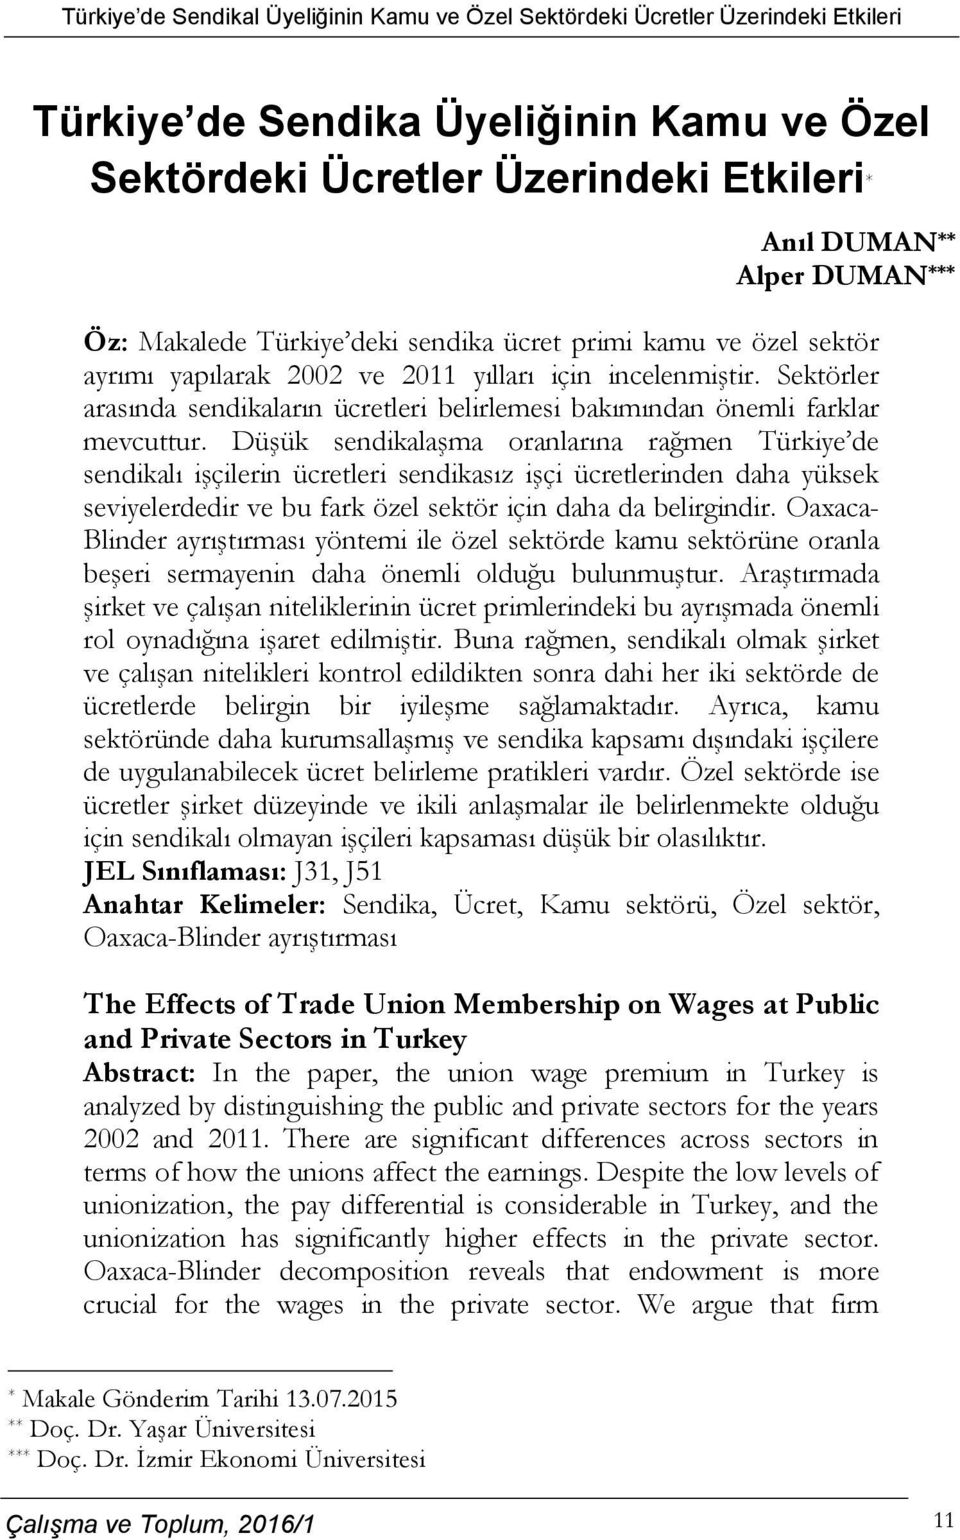 Düşük sendikalaşma oranlarına rağmen Türkiye de sendikalı işçilerin ücretleri sendikasız işçi ücretlerinden daha yüksek seviyelerdedir ve bu fark özel sektör için daha da belirgindir.